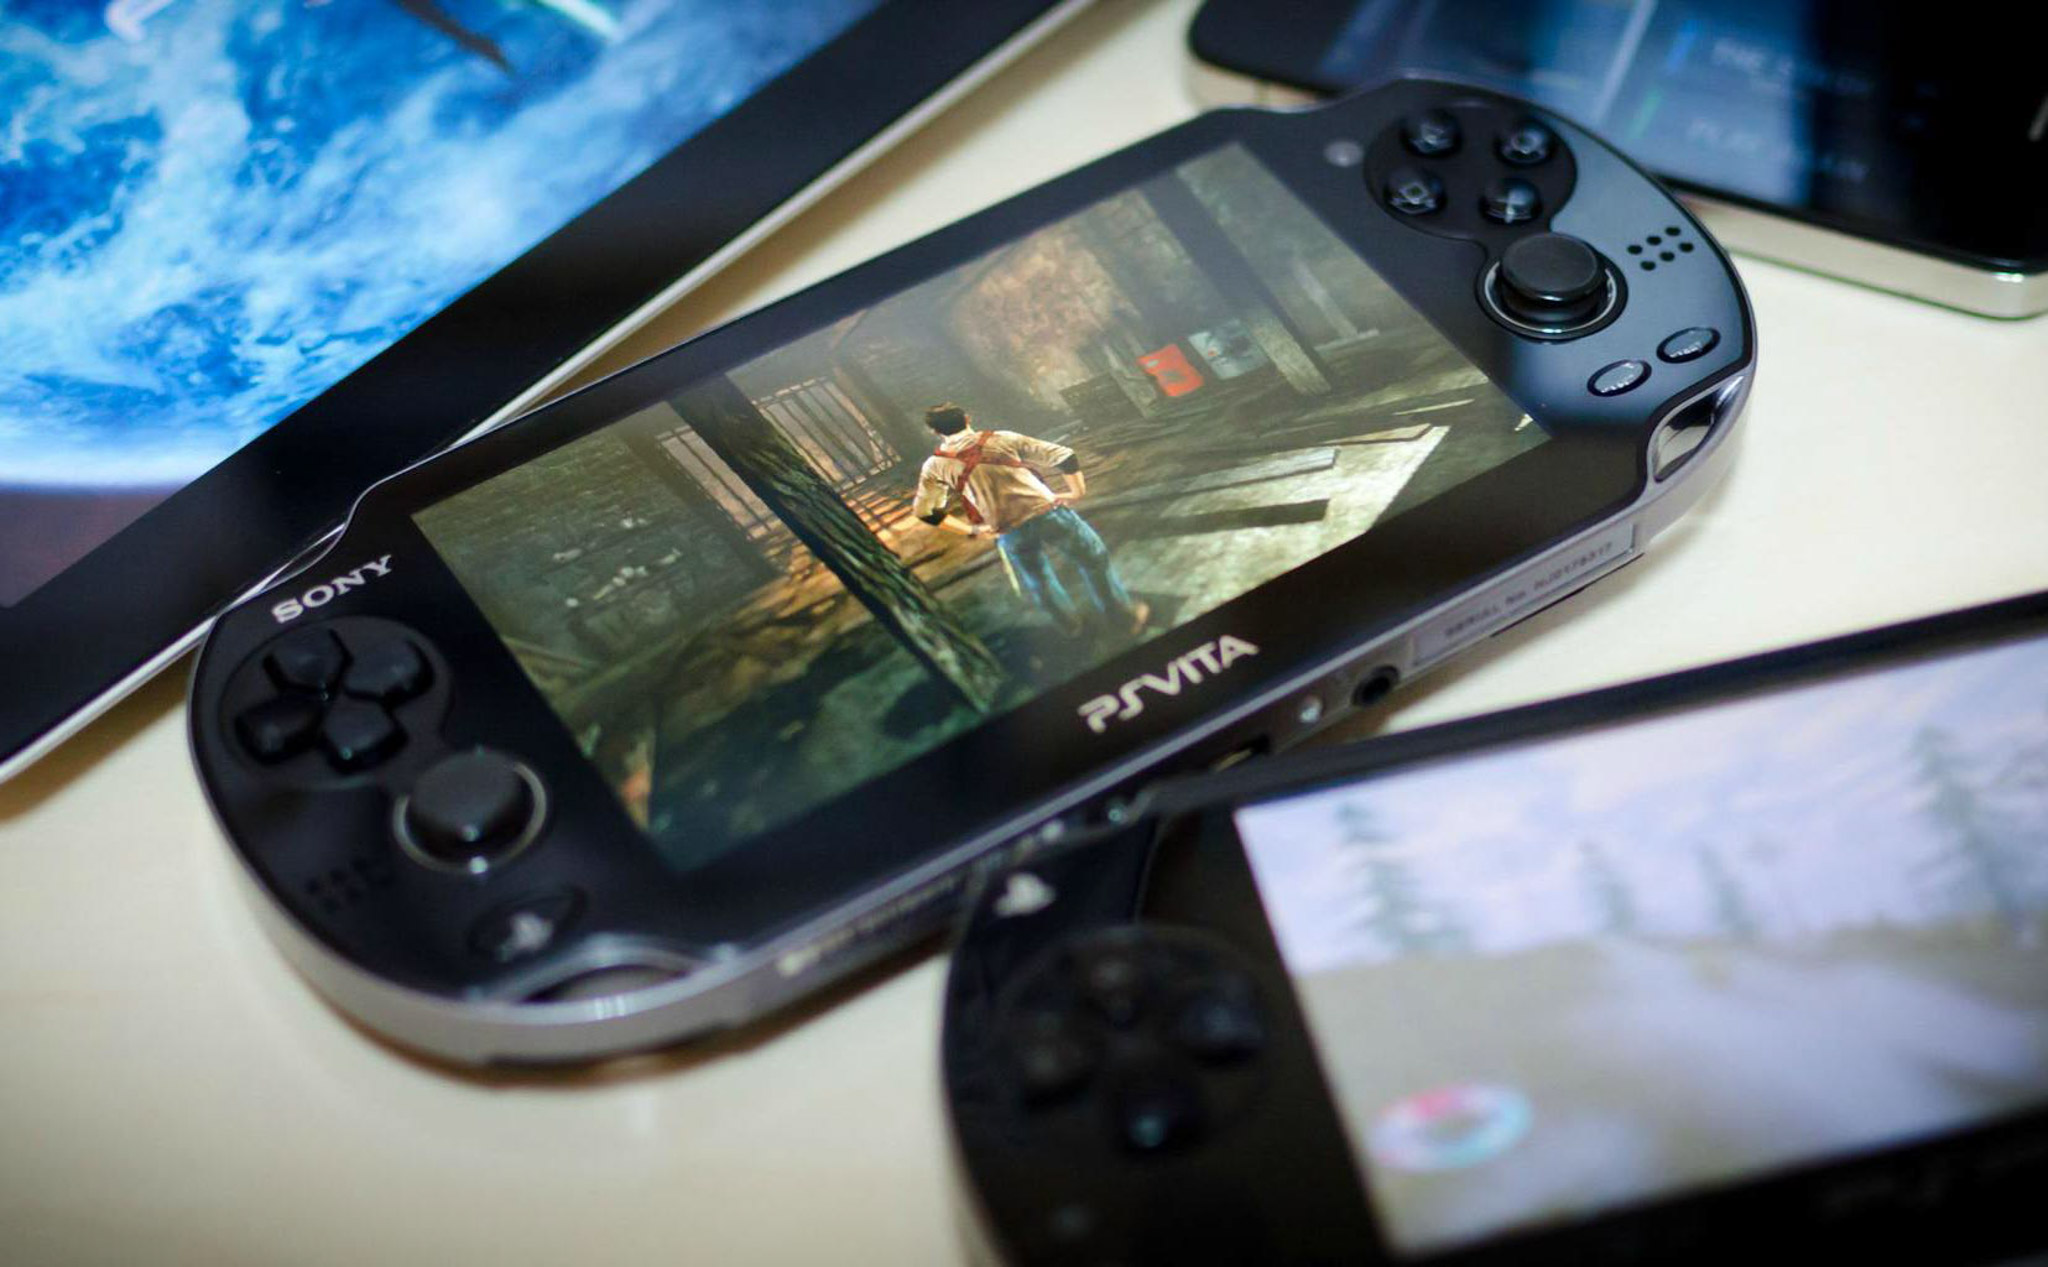 PS Vita chính thức bị ngưng sản xuất, vĩnh biệt hệ máy chơi game cầm tay cuối cùng của Sony